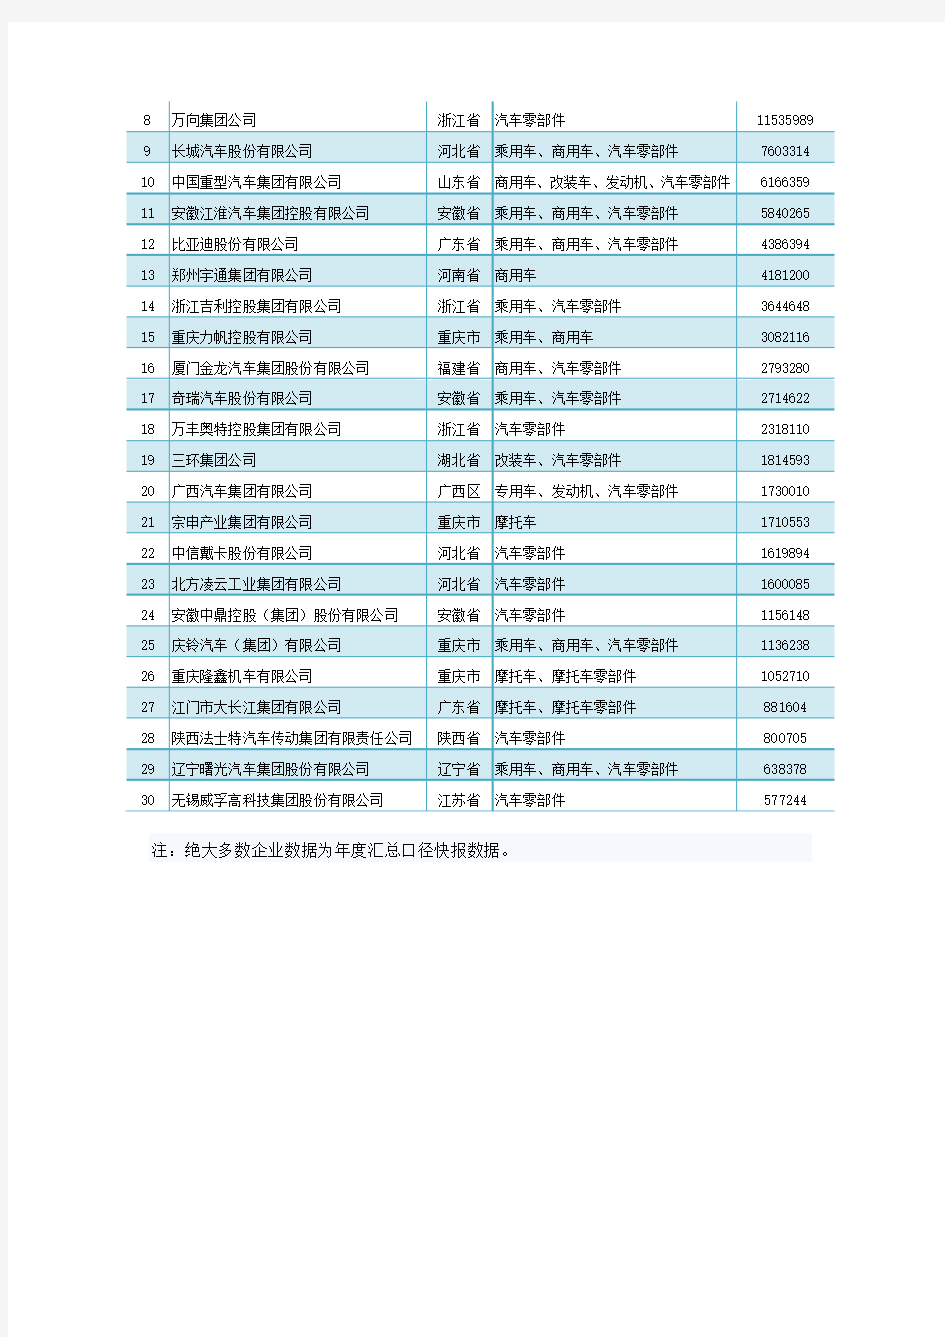 2015年度中国汽车工业三十强企业名单